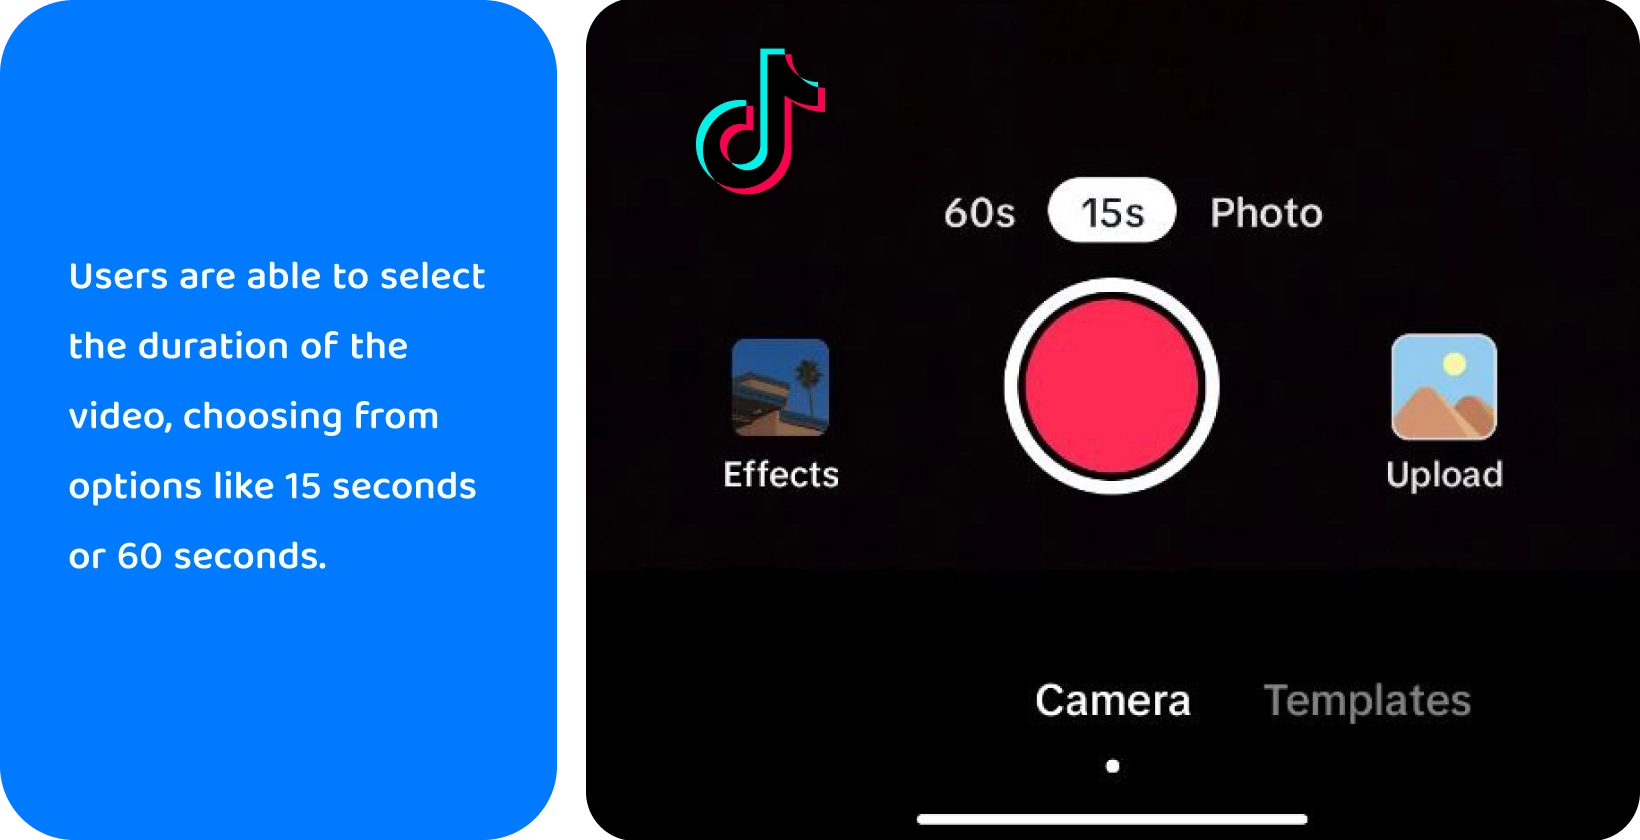 TikTok innspillingsgrensesnitt med alternativer for å legge til lyd, snu kamera, bruke filtre, bruke tidtaker og mer for kreativ videoproduksjon.
